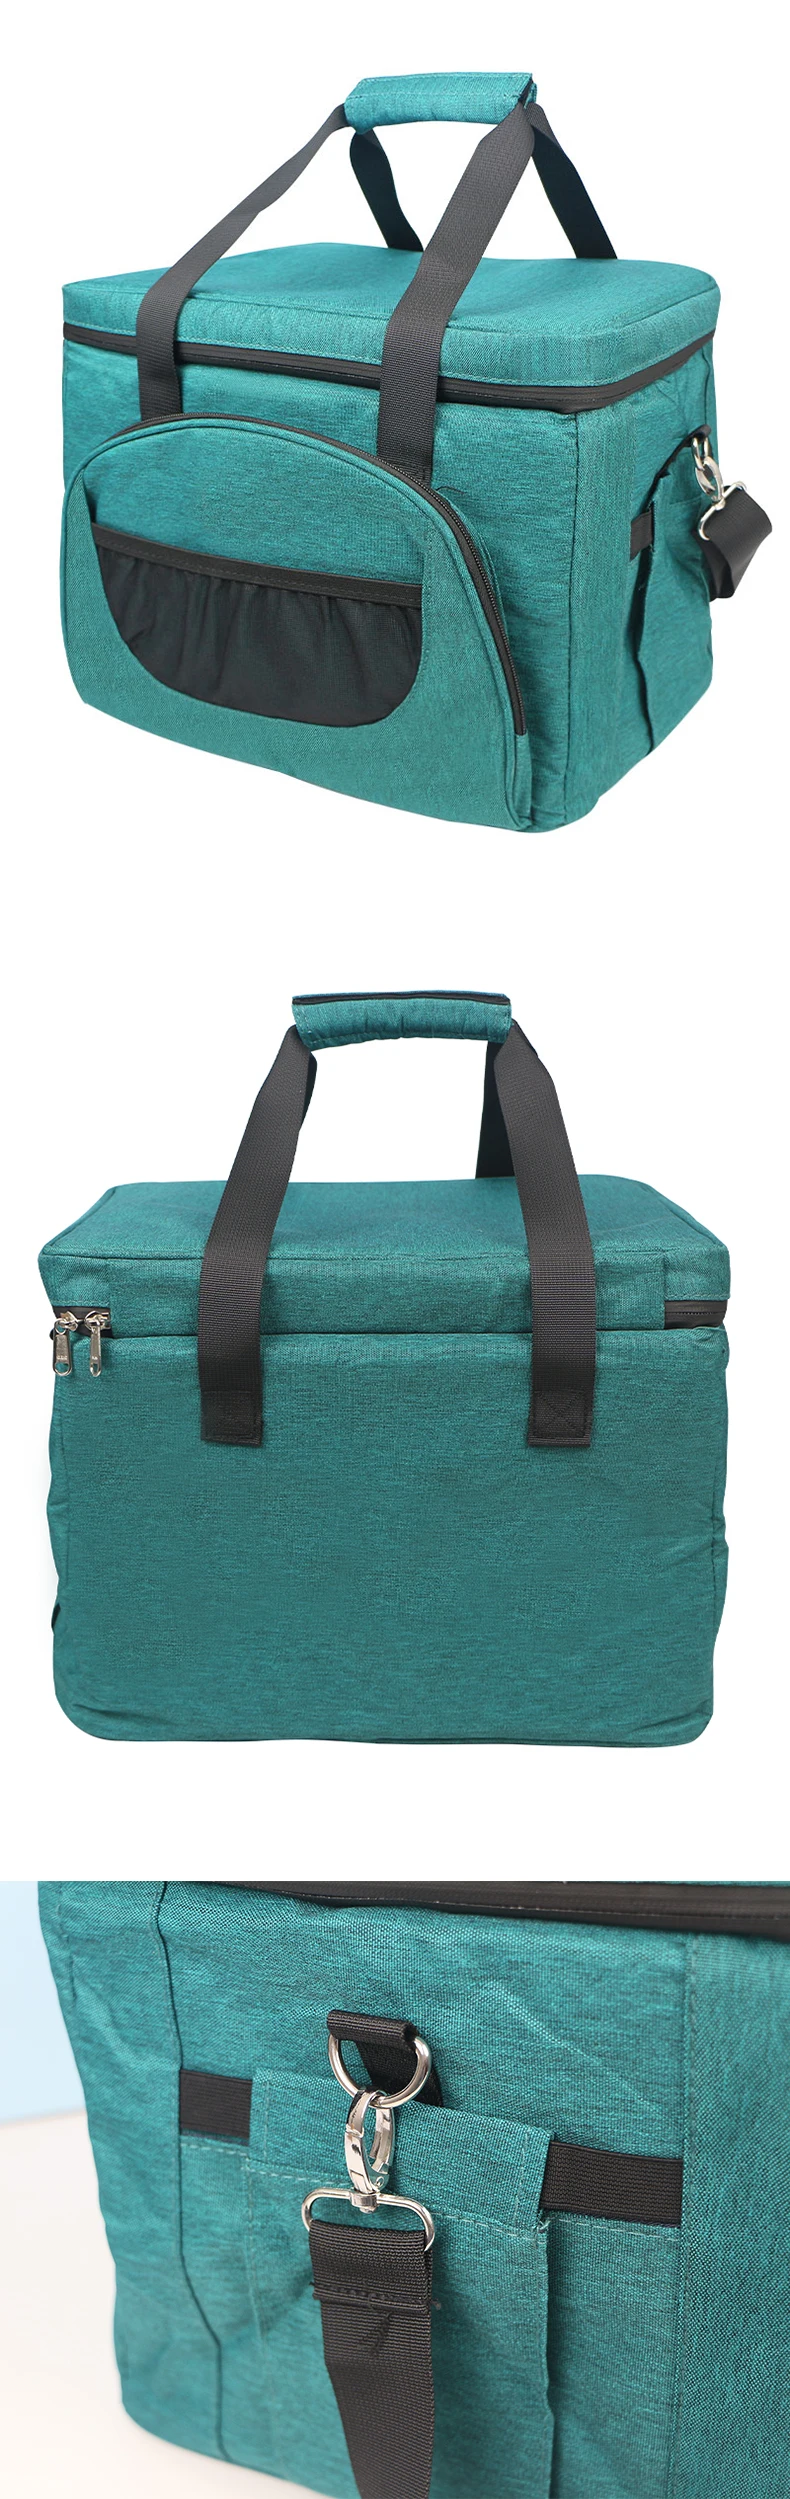 Outdoor Picnic Cooler Bag Lightweight Portable Promotional Cooler Bag Factory Custom Soft Cooler Bag